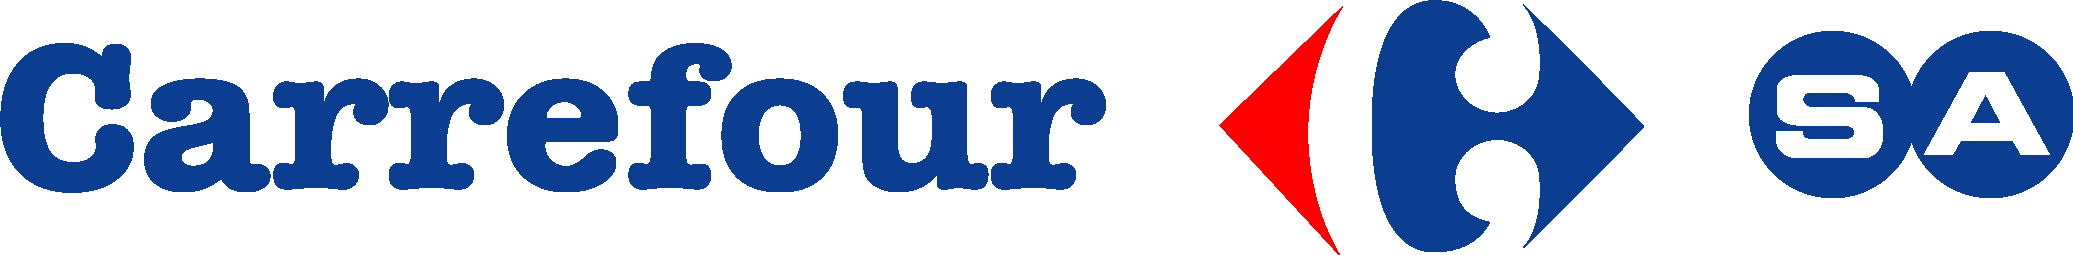 Carrefour SA Logo Vector